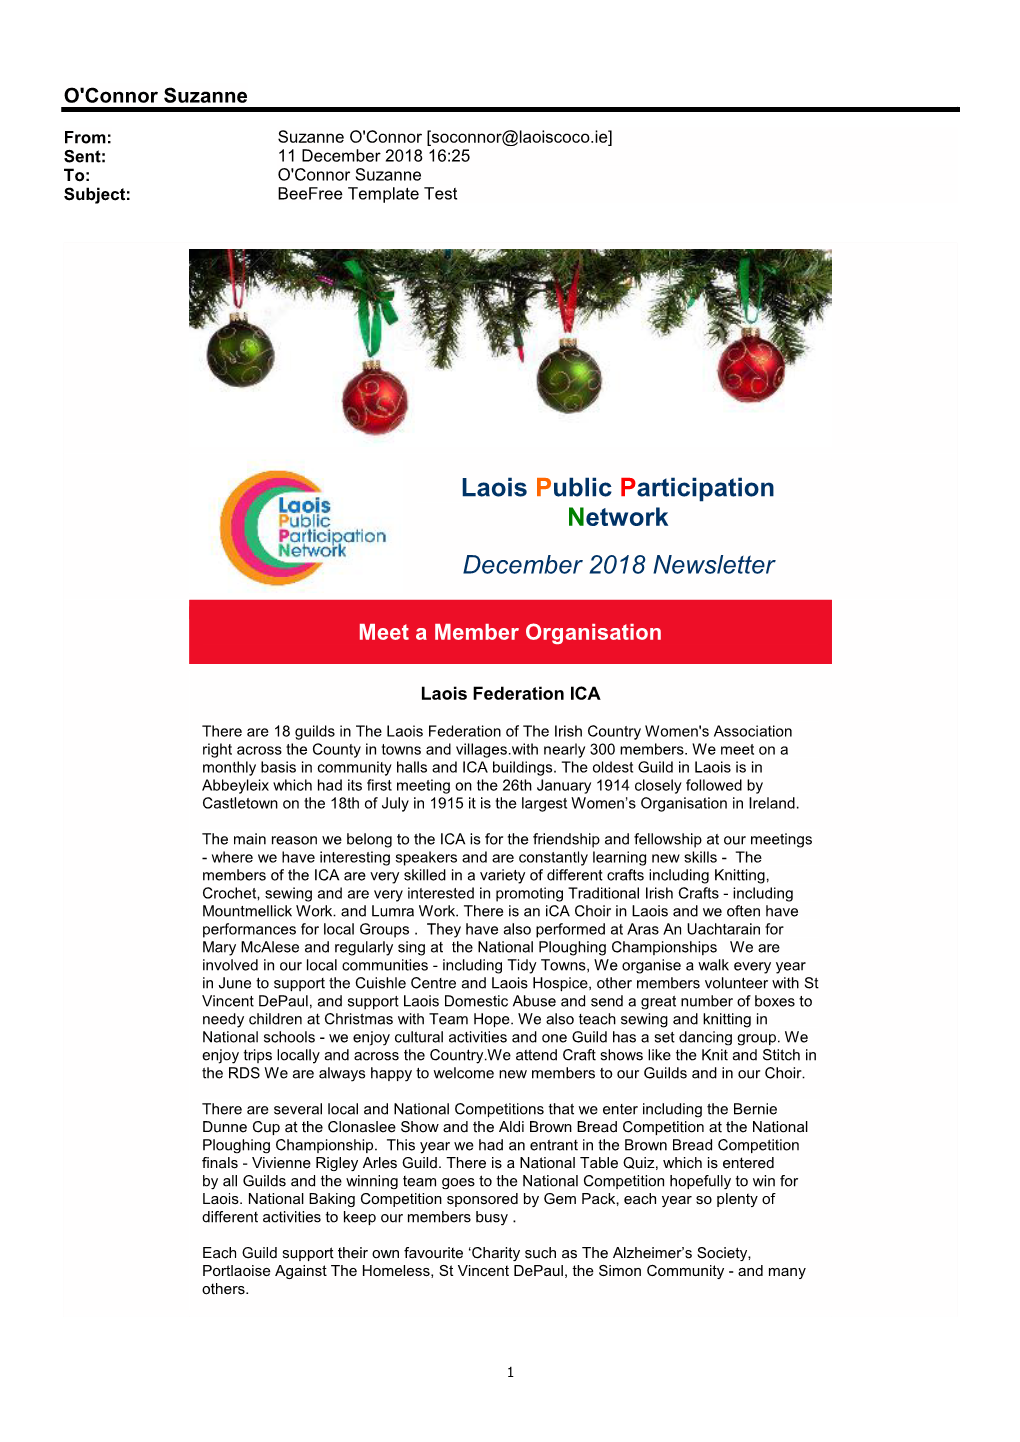 Laois Public Participation Network December 2018 Newsletter